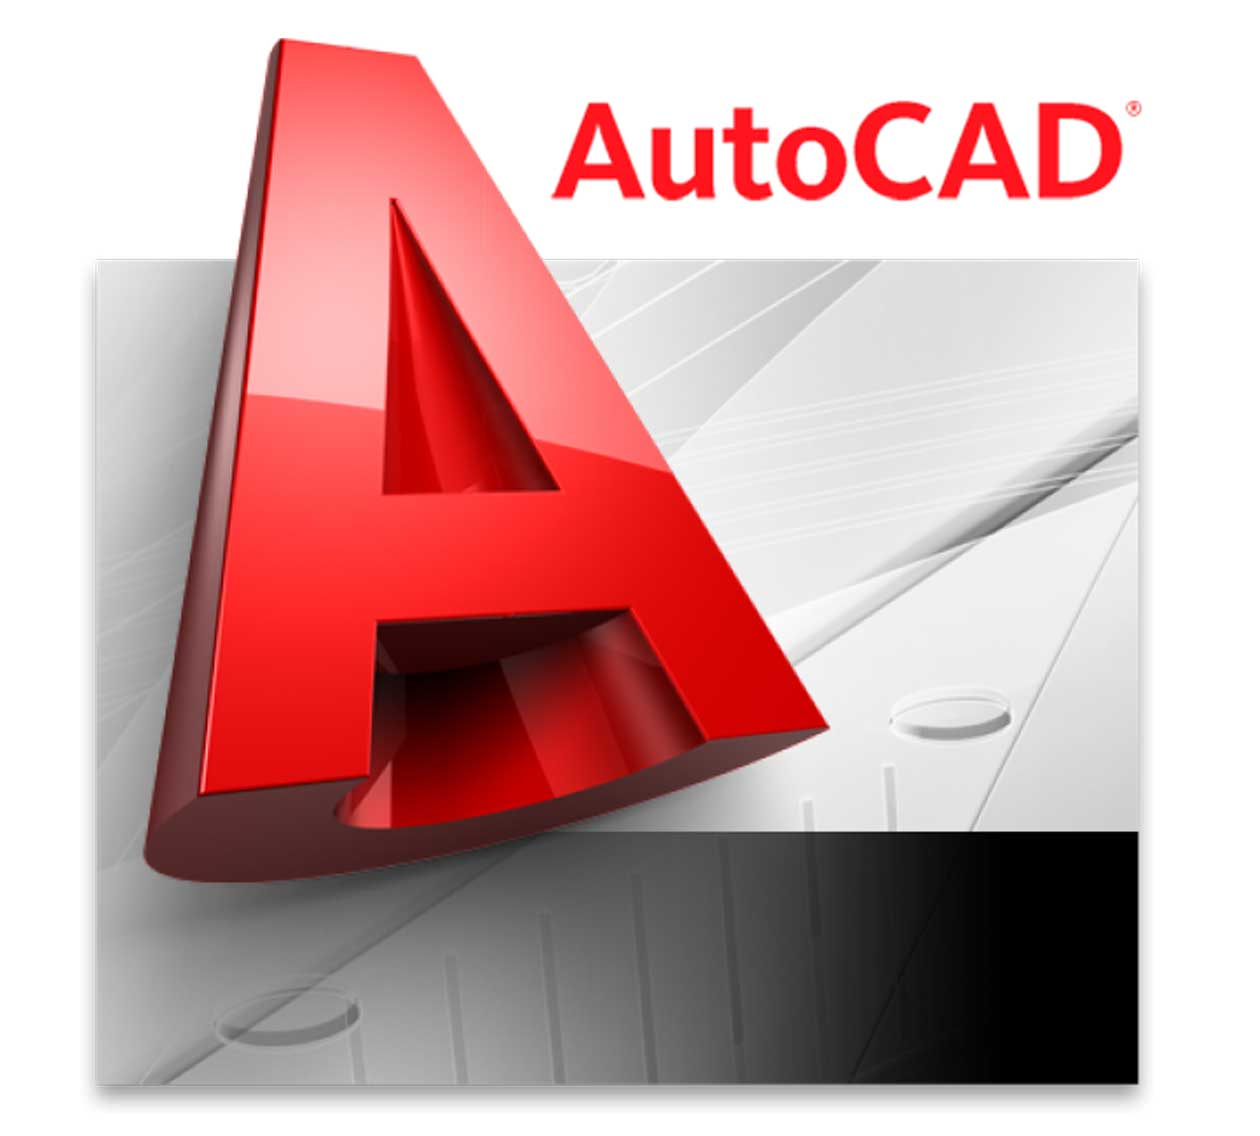 AutoCAD là gì? Hướng dẫn cài đặt phần mềm AutoCAD